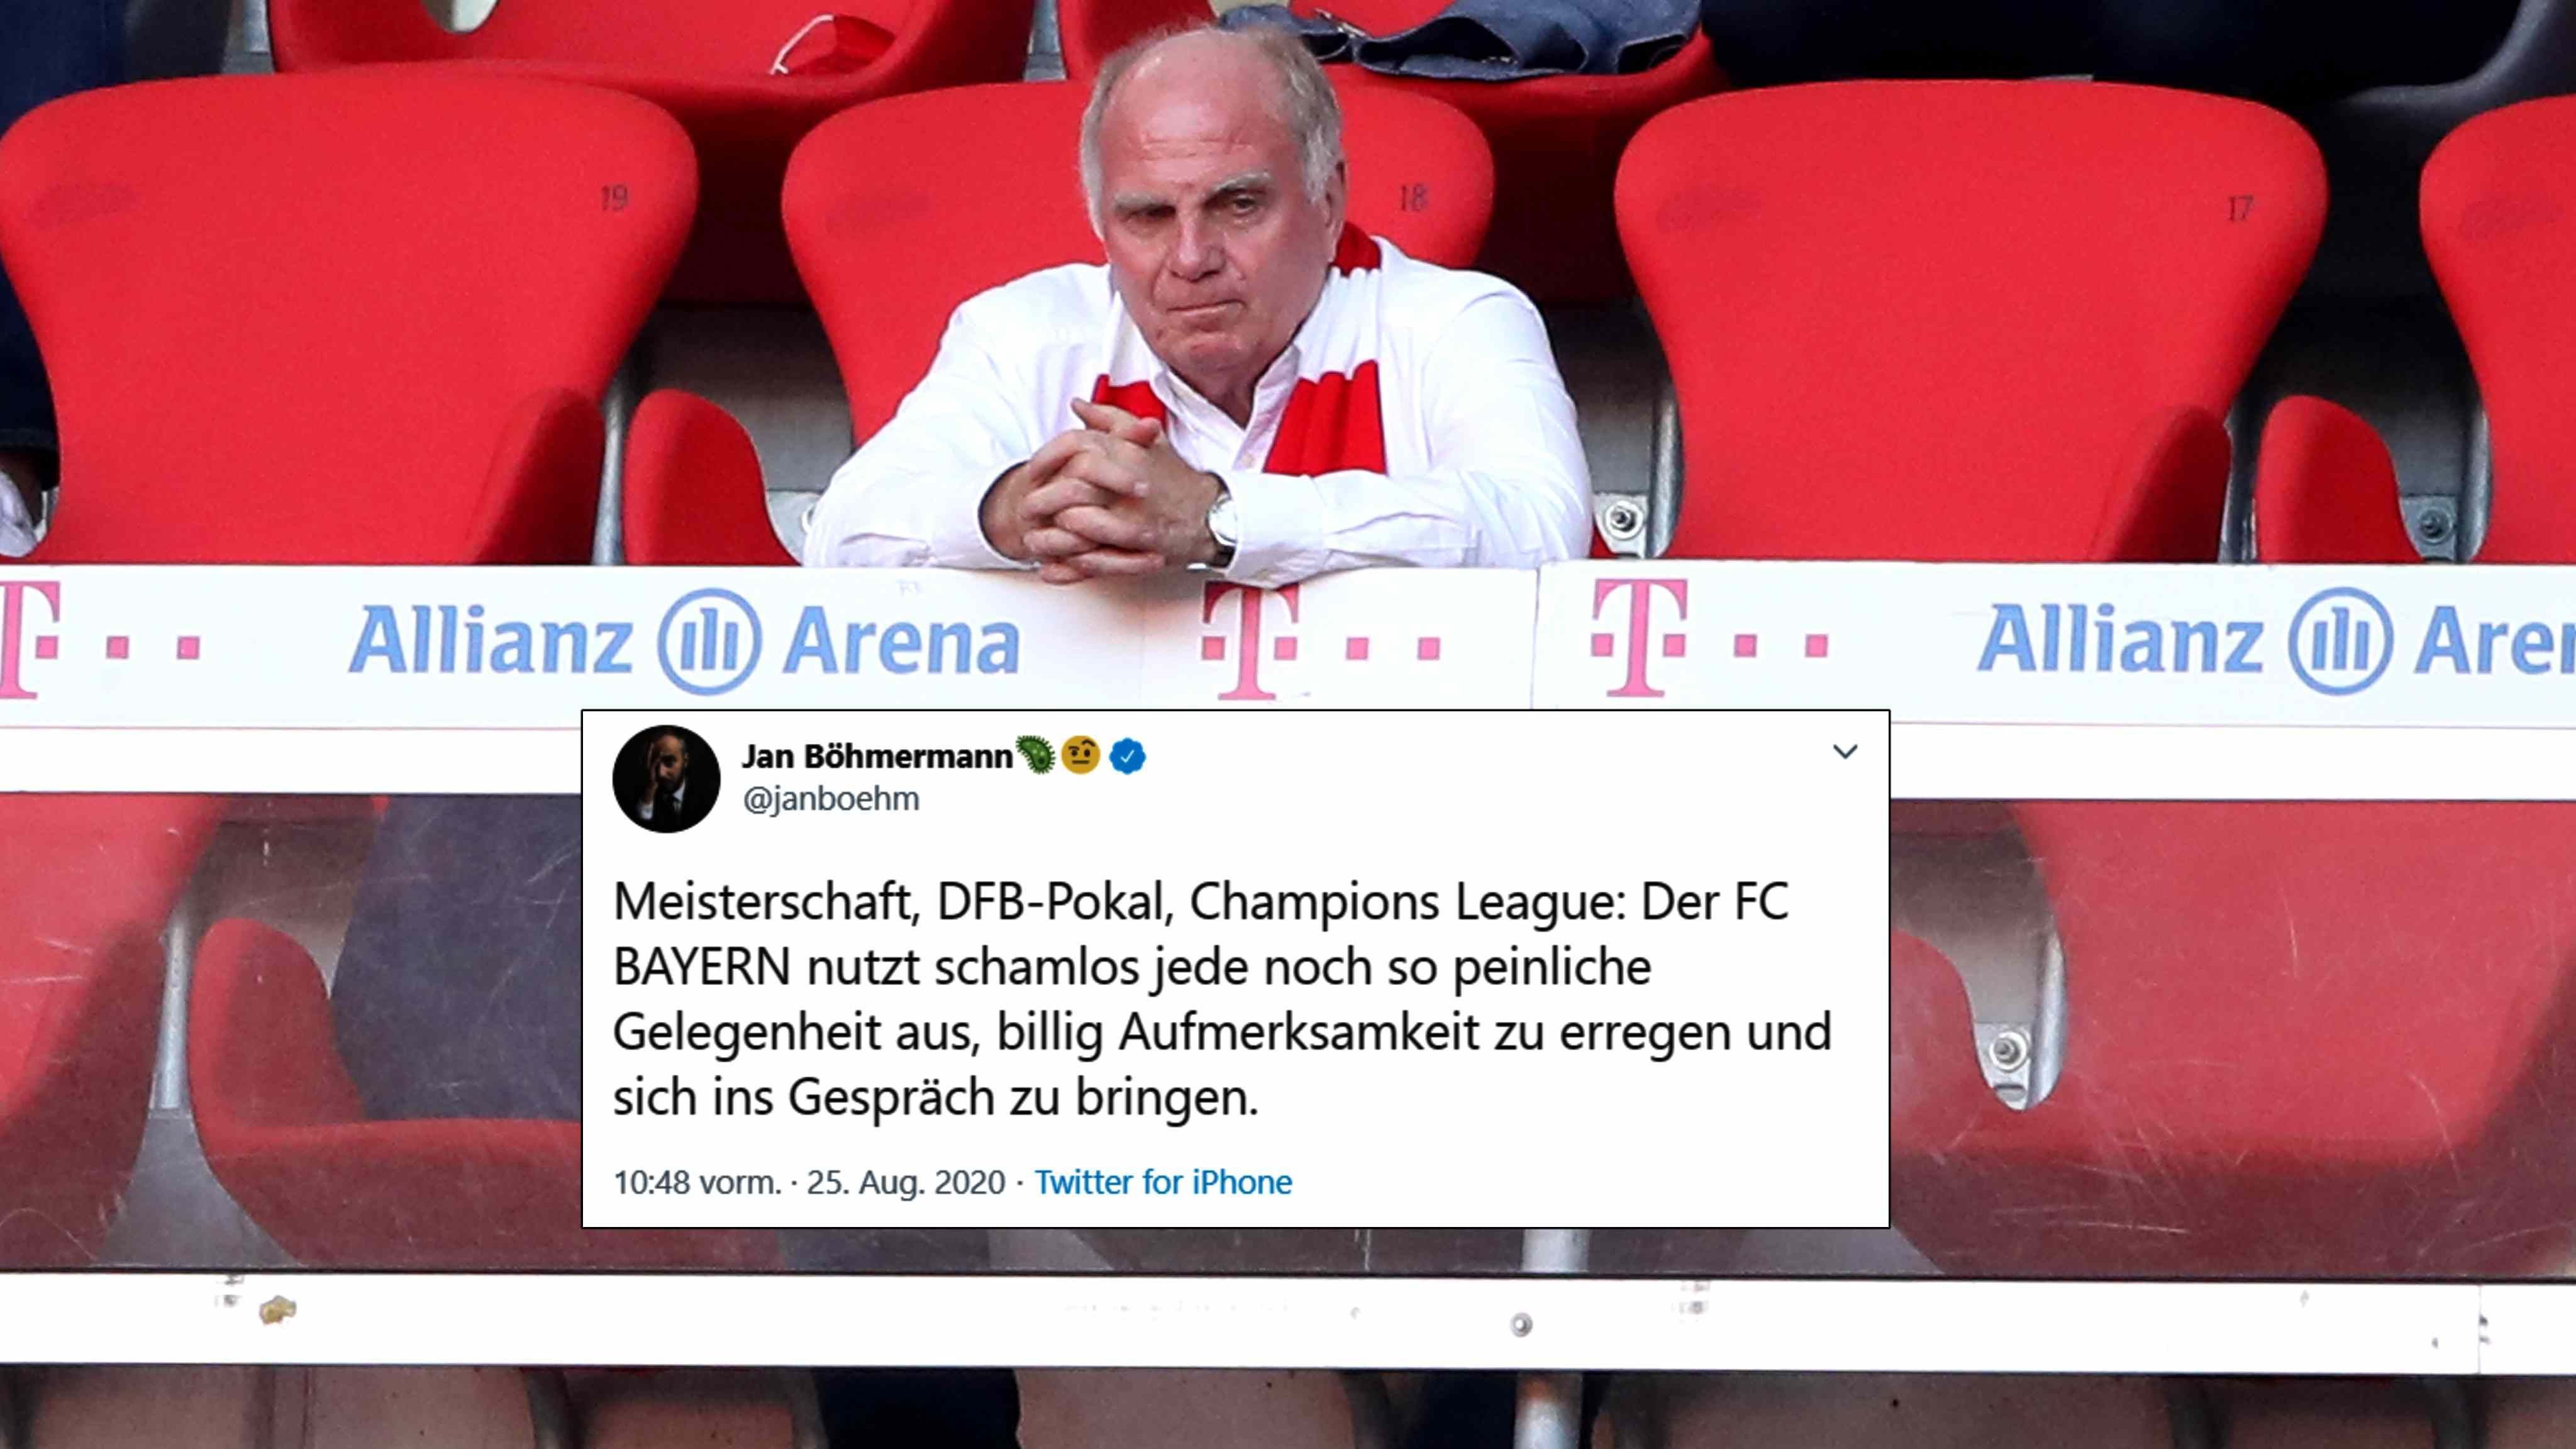 
                <strong>Jan Böhmermann legt gegen den FC Bayern nach</strong><br>
                Auch am Dienstagnachmittag schießt der Satiriker Jan Böhmermann weiter gegen den FC Bayern. Obwohl in diesem Tweet mehr Ironie versteckt ist, als in denen zuvor, scheint Böhmermann kein Freund des deutschen Rekordmeisters zu sein.
              